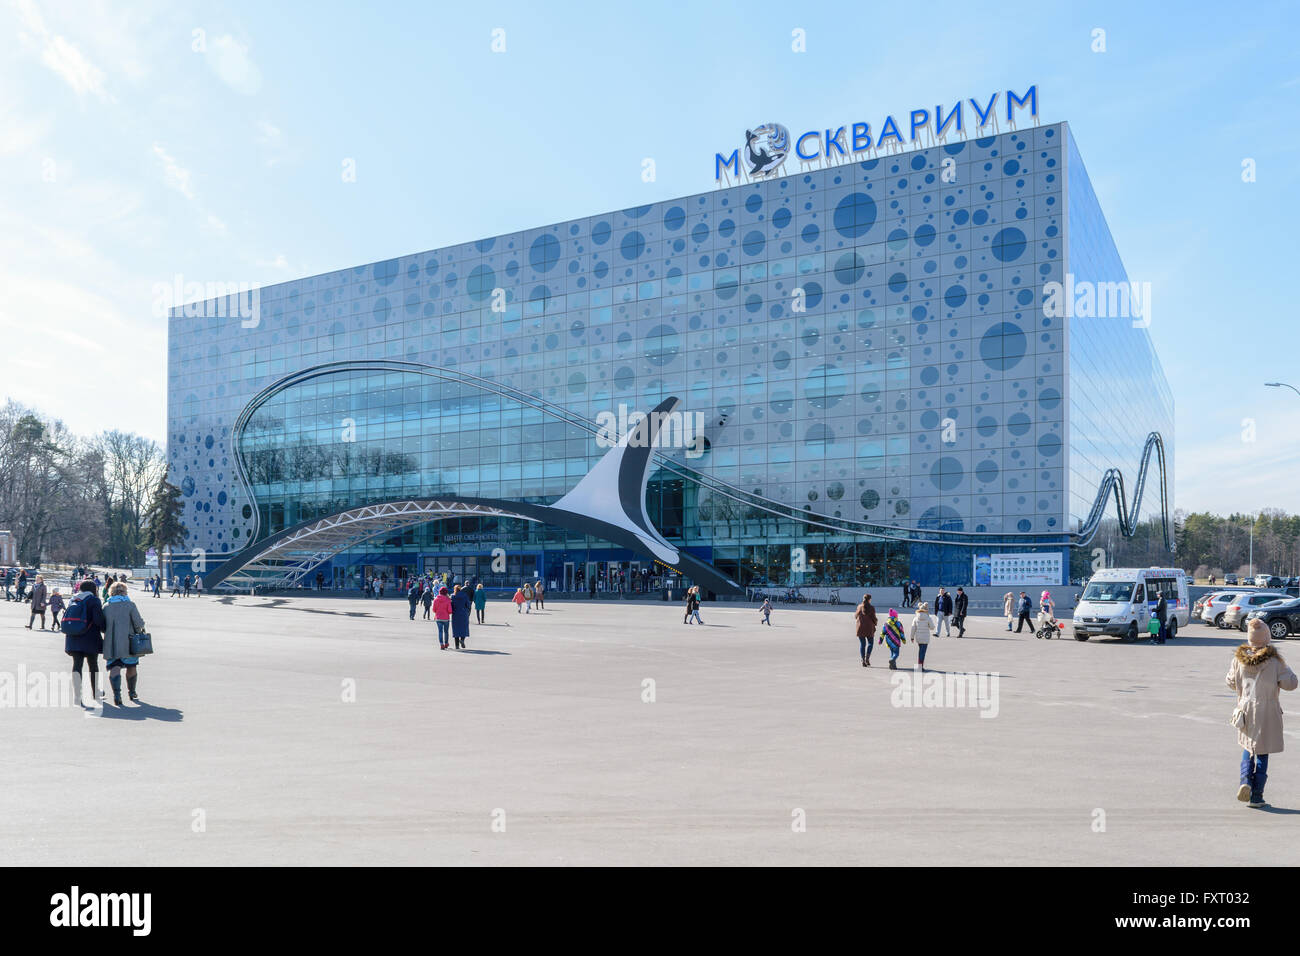 Moskau, Russland - 29. März 2016: Das Gebäude des Zentrums für Meereskunde und Meeresbiologie "Moskvarium" an die VDNH Stockfoto